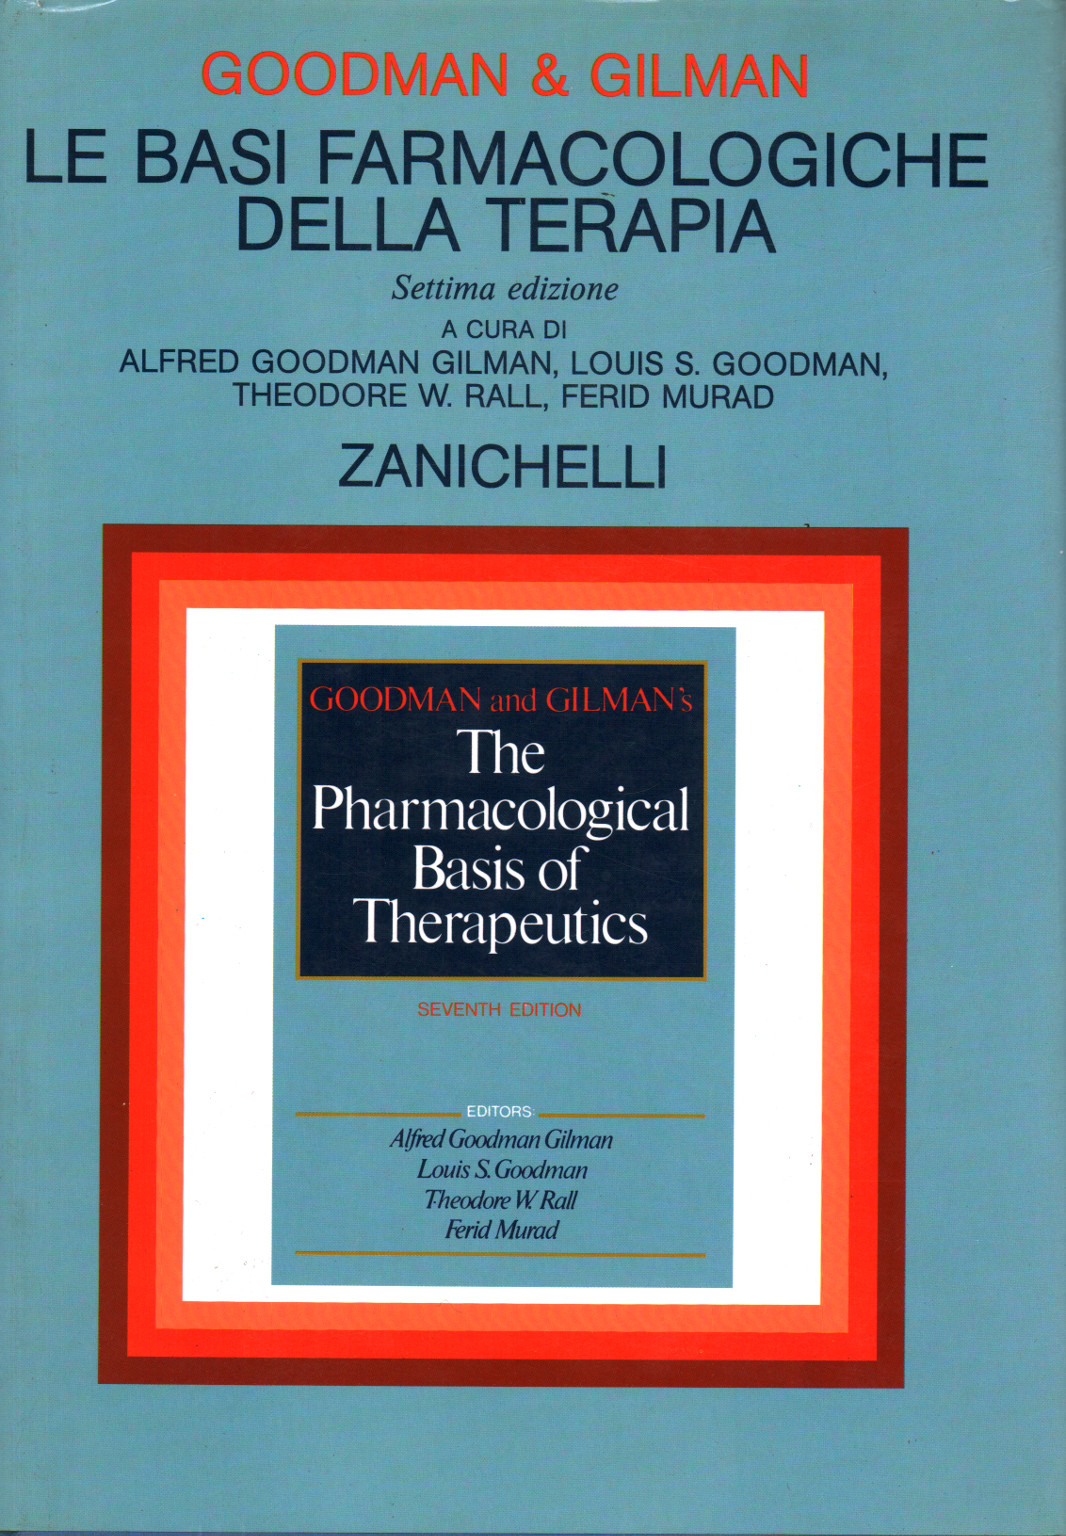 Les bases de la thérapie pharmacologique, s.un.